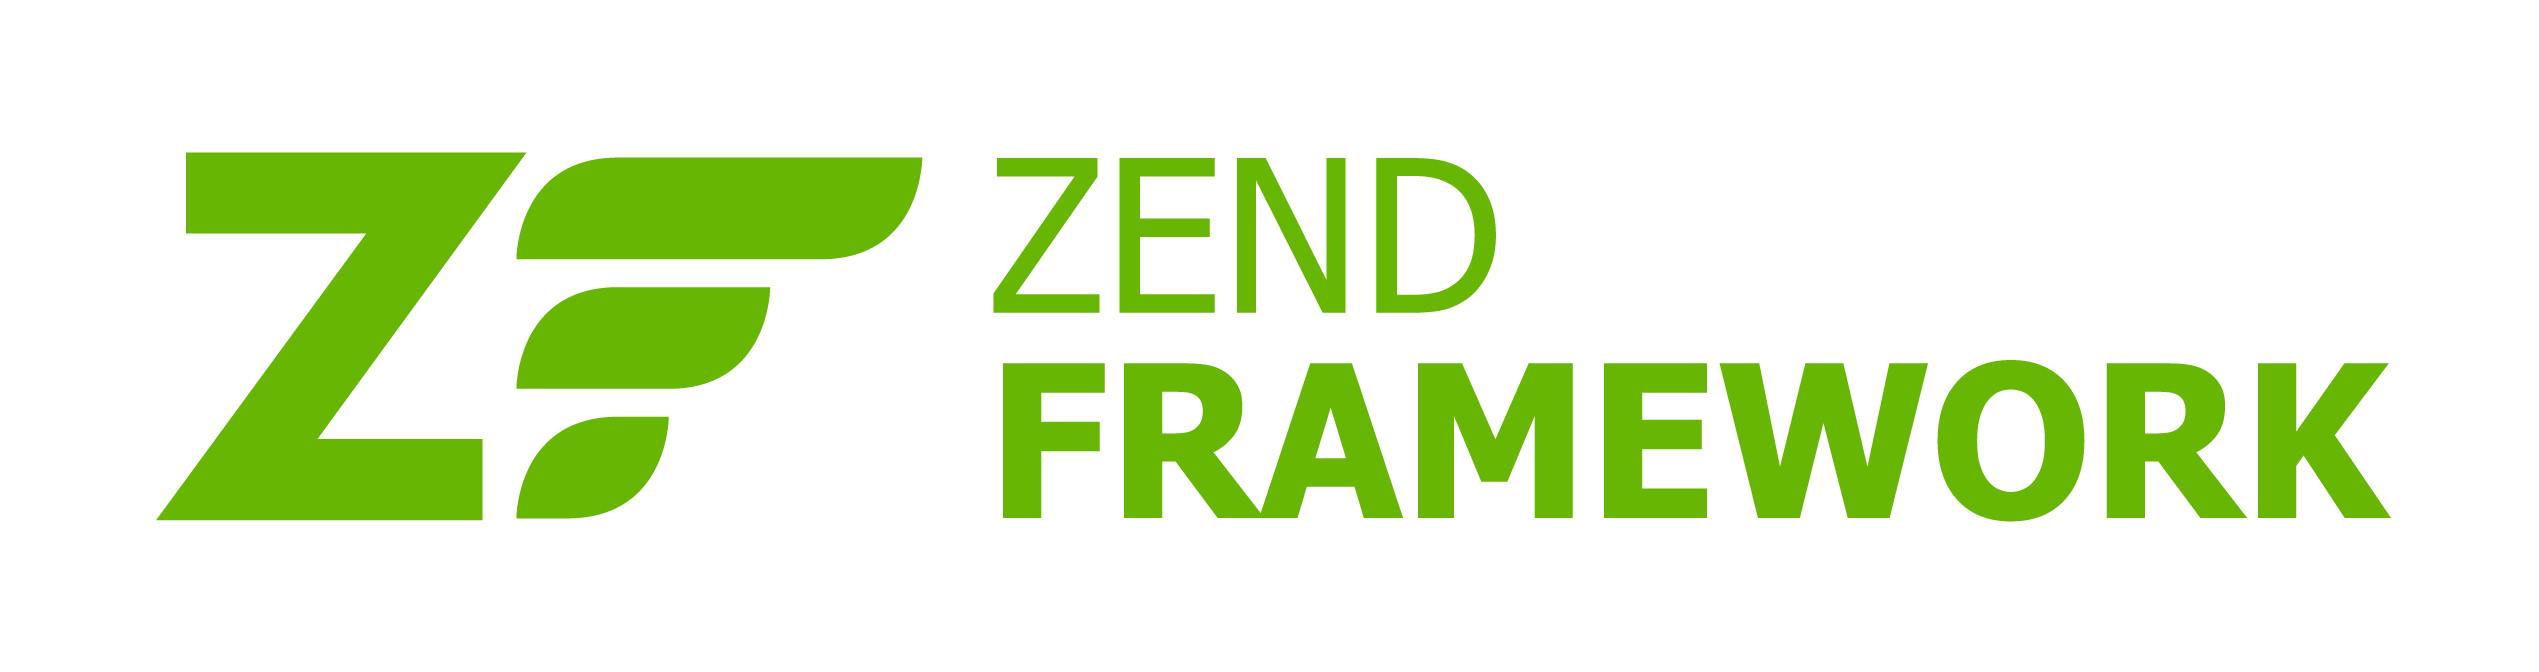 Strony intrnetowe Zend Framework